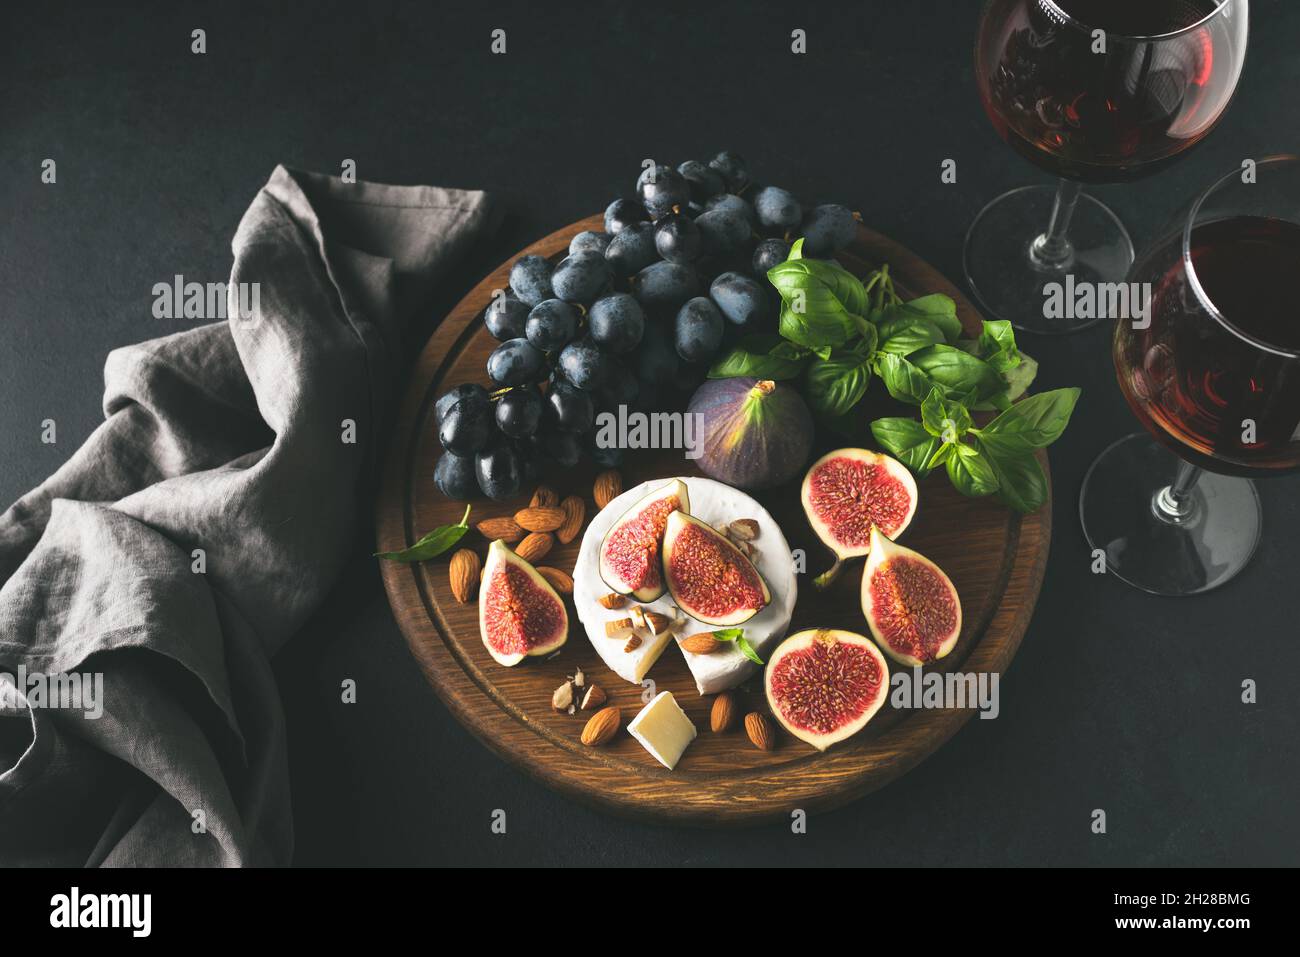 Fromage blanc brie ou camembert avec figues et raisins sur bois, servi avec un verre de vin.Vue de dessus de l'image en tons.Assortiment de hors-d'œuvre au fromage et au vin Banque D'Images